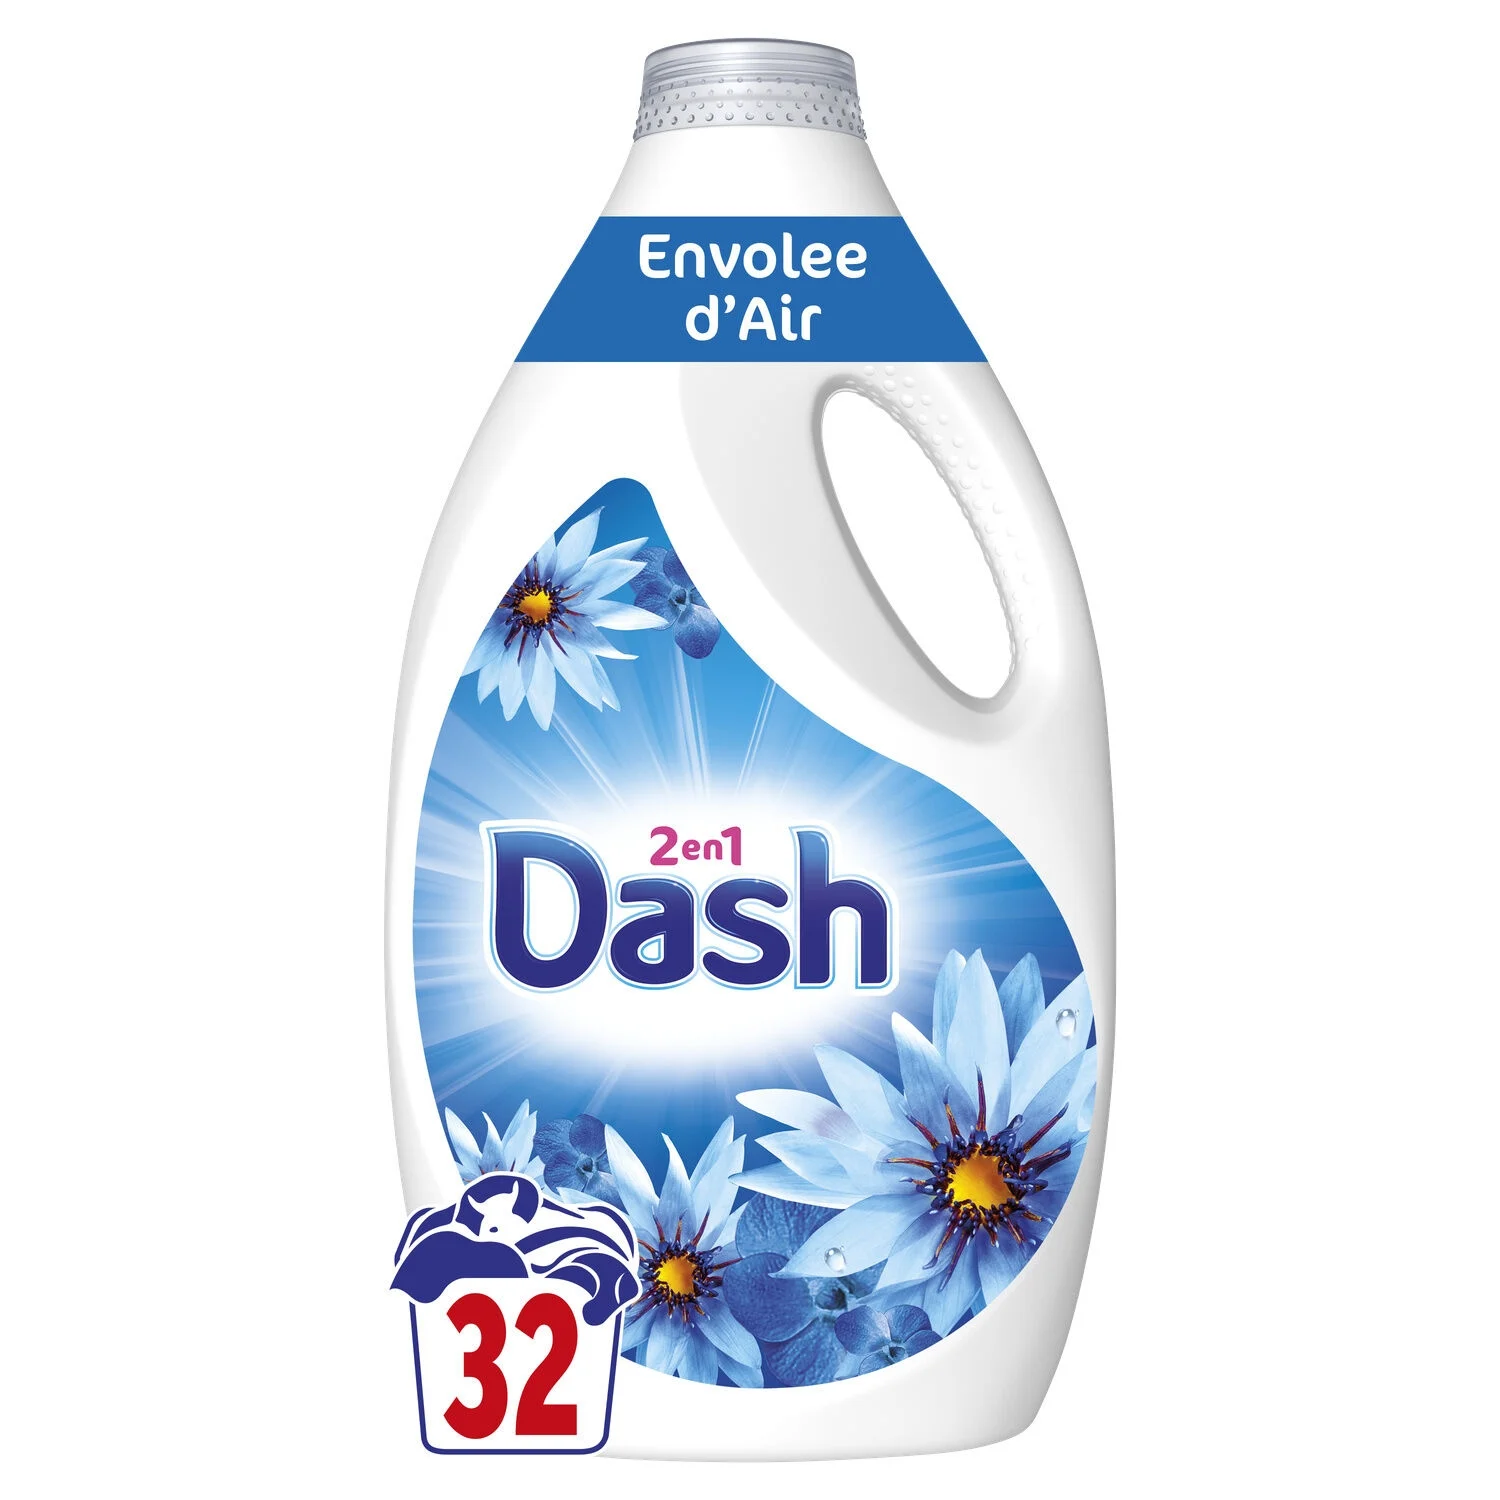 Dash Liquide Envolee D Air 32d